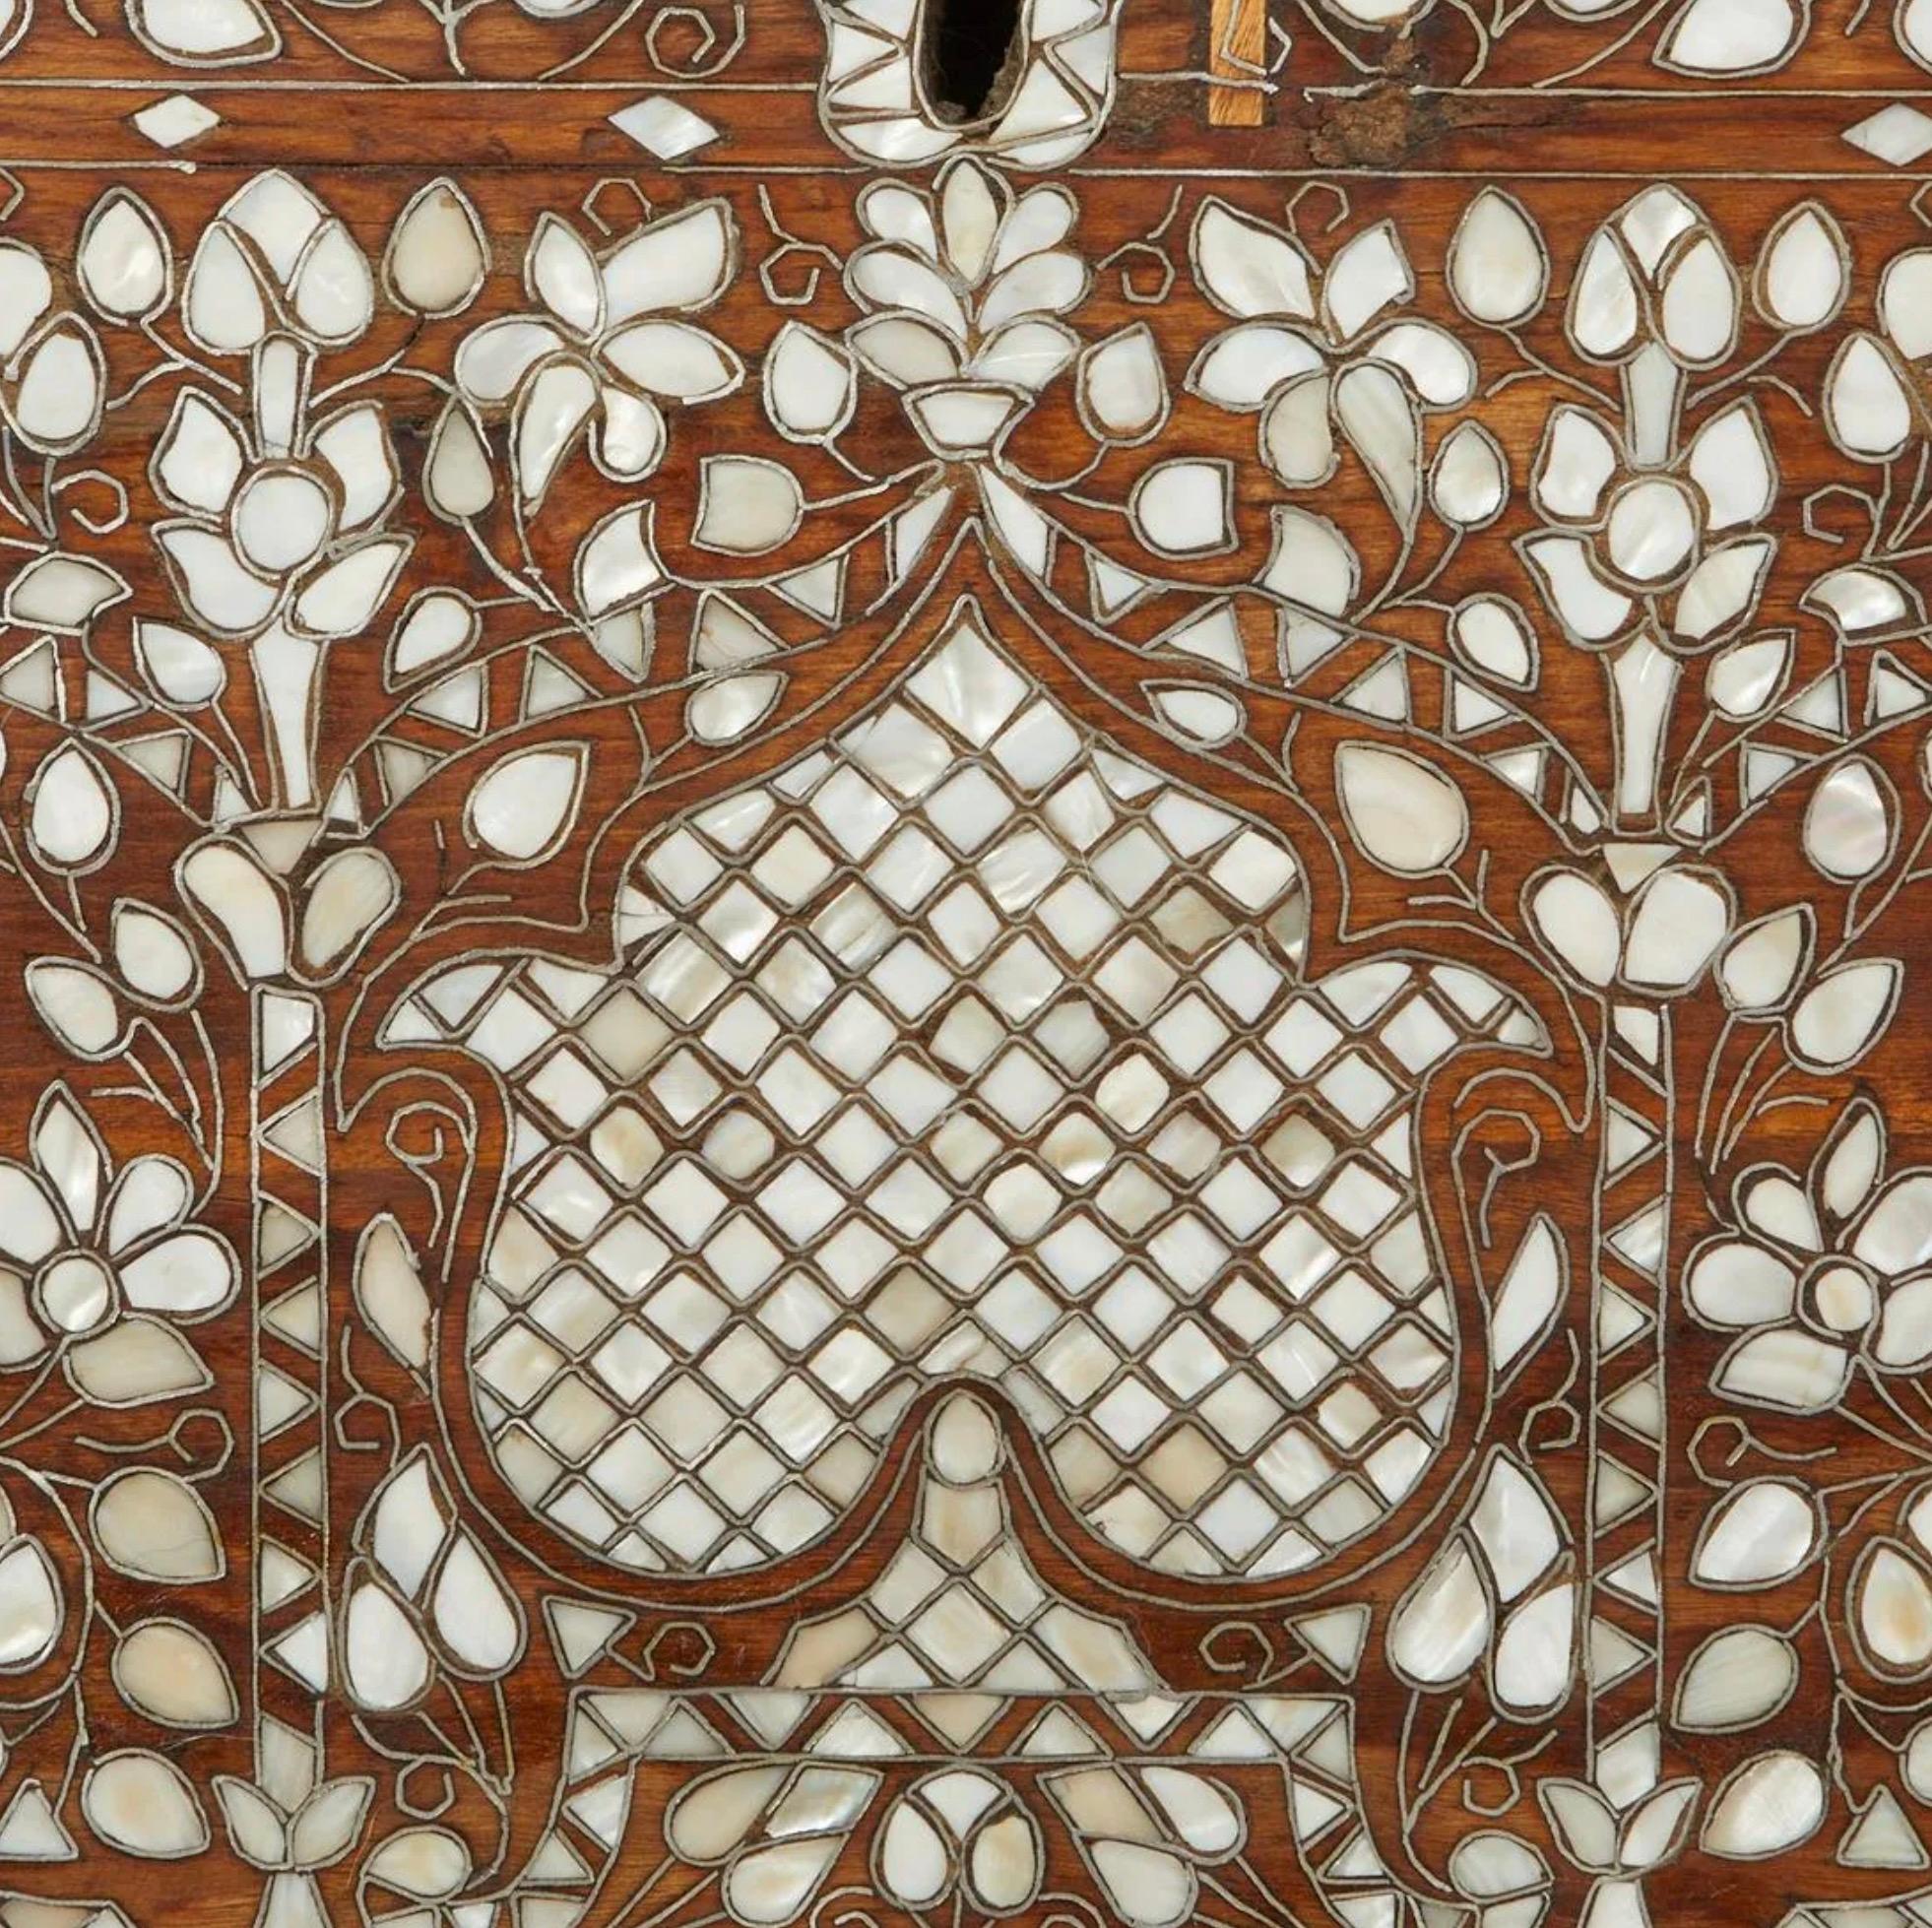 Syrische Hochzeits- oder Aussteuertruhe aus Holz mit Perlmuttintarsien. Der Stamm ist reichlich mit komplizierten geometrischen und floralen Mustern aus Perlmutt mit der Intarsienmethode eingelegt. Der Deckel lässt sich anheben und gibt den Blick